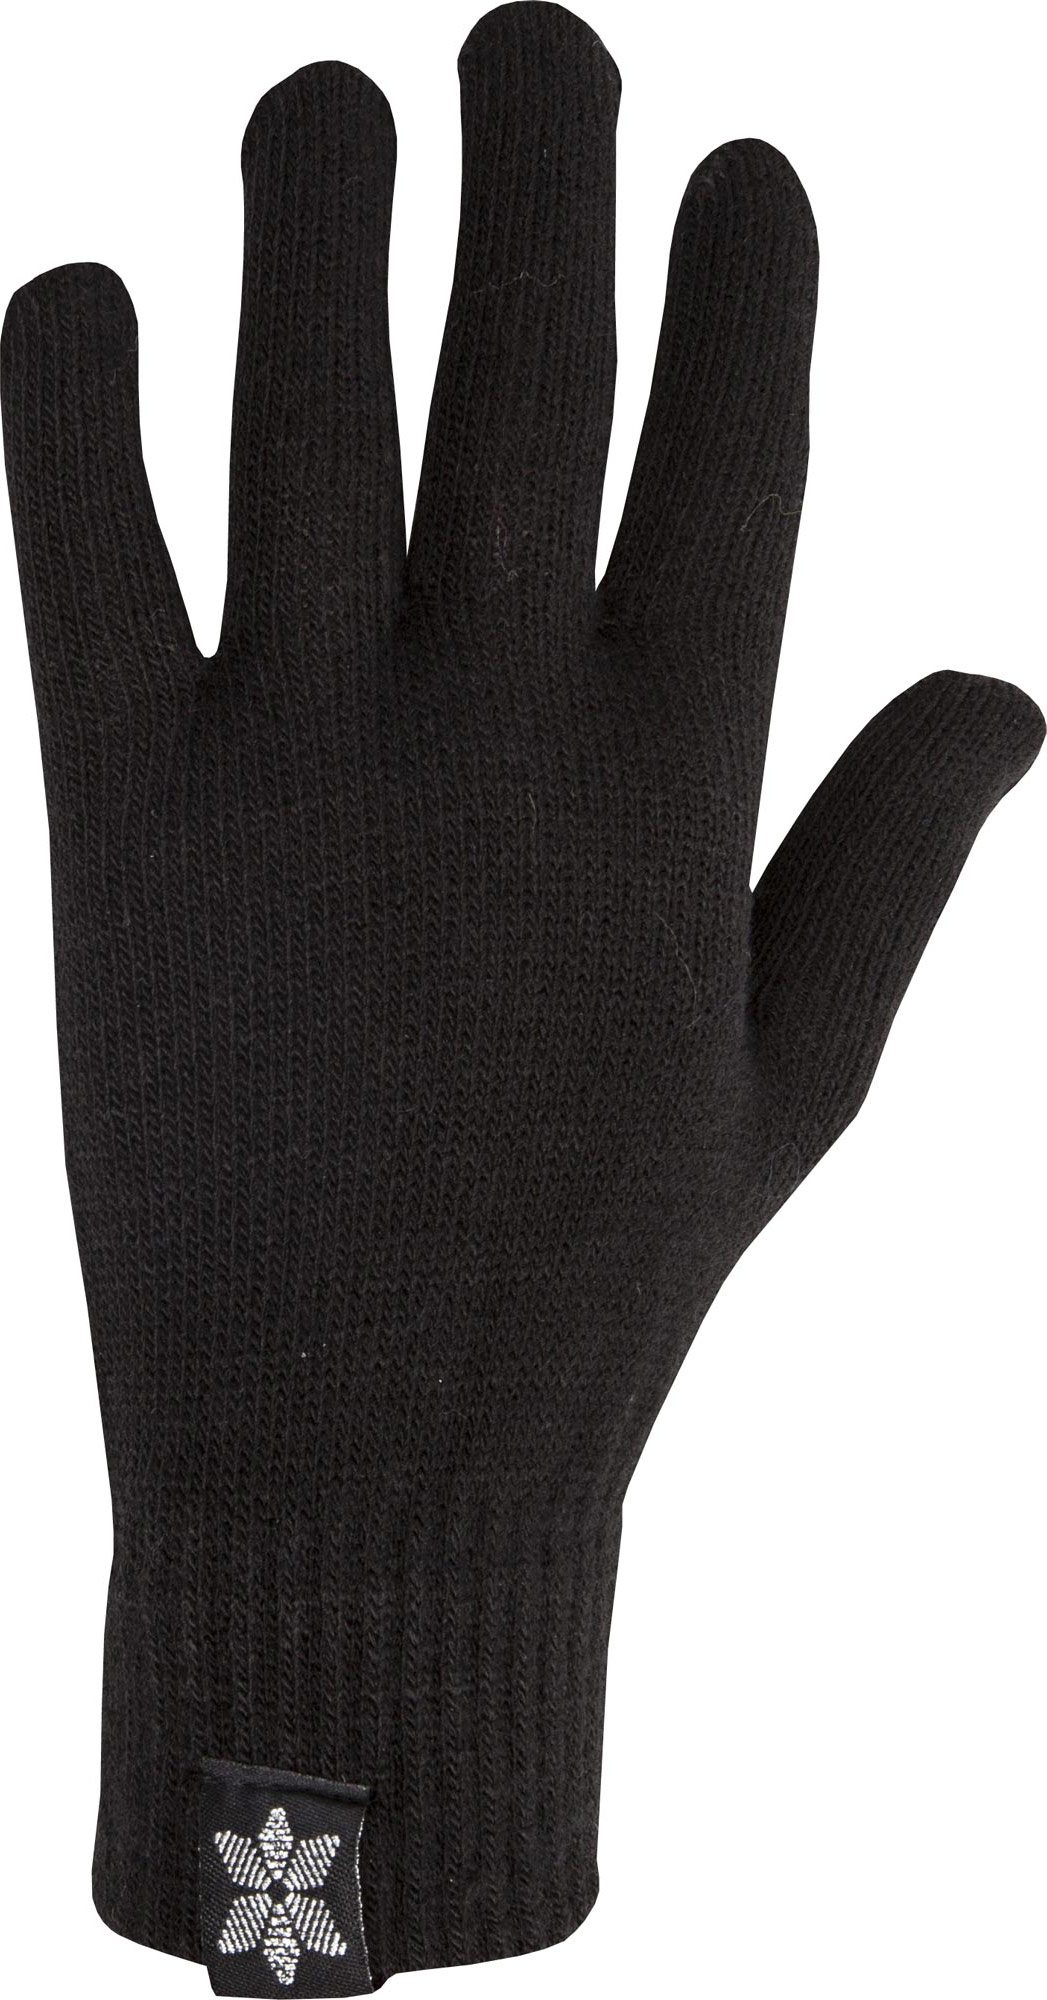 Women’s knitted gloves